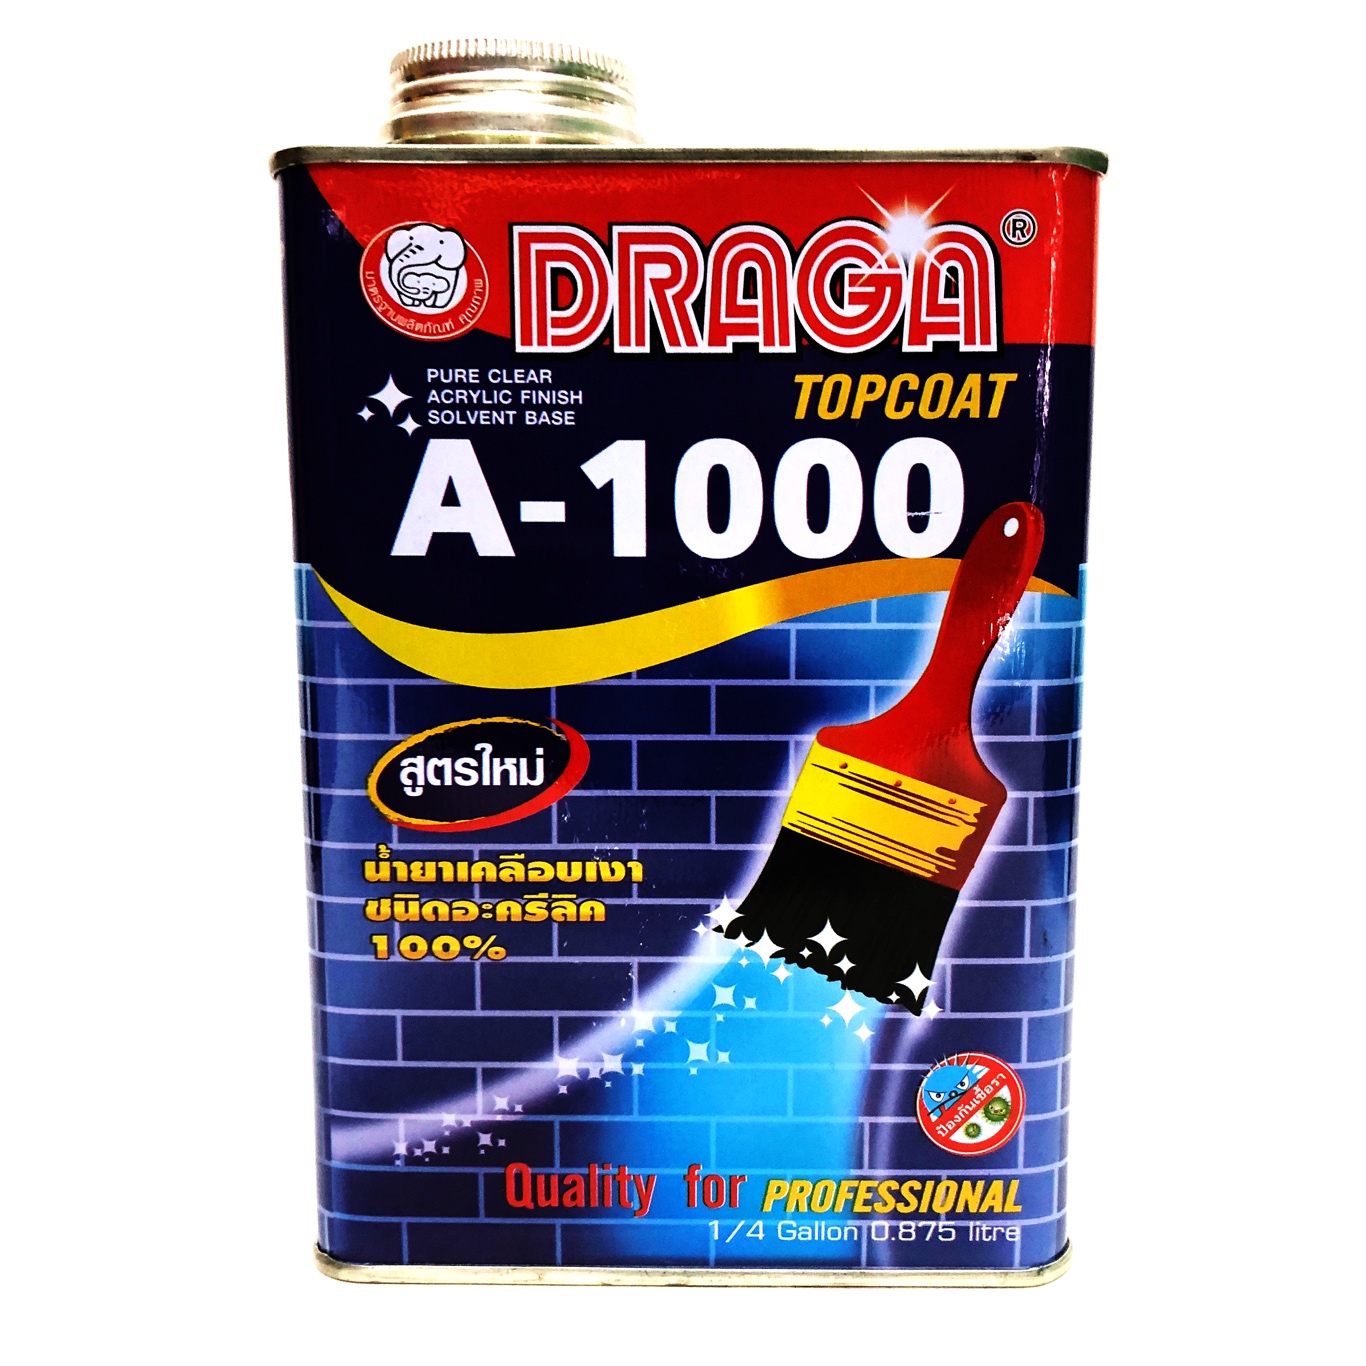 DRAGA A 1000 TOPCOAT น้ำยาเคลือบเงา ชนิดอะคริลิค 100% น้ำยาเคลือบ ปูน เคลือบอิฐโชว์